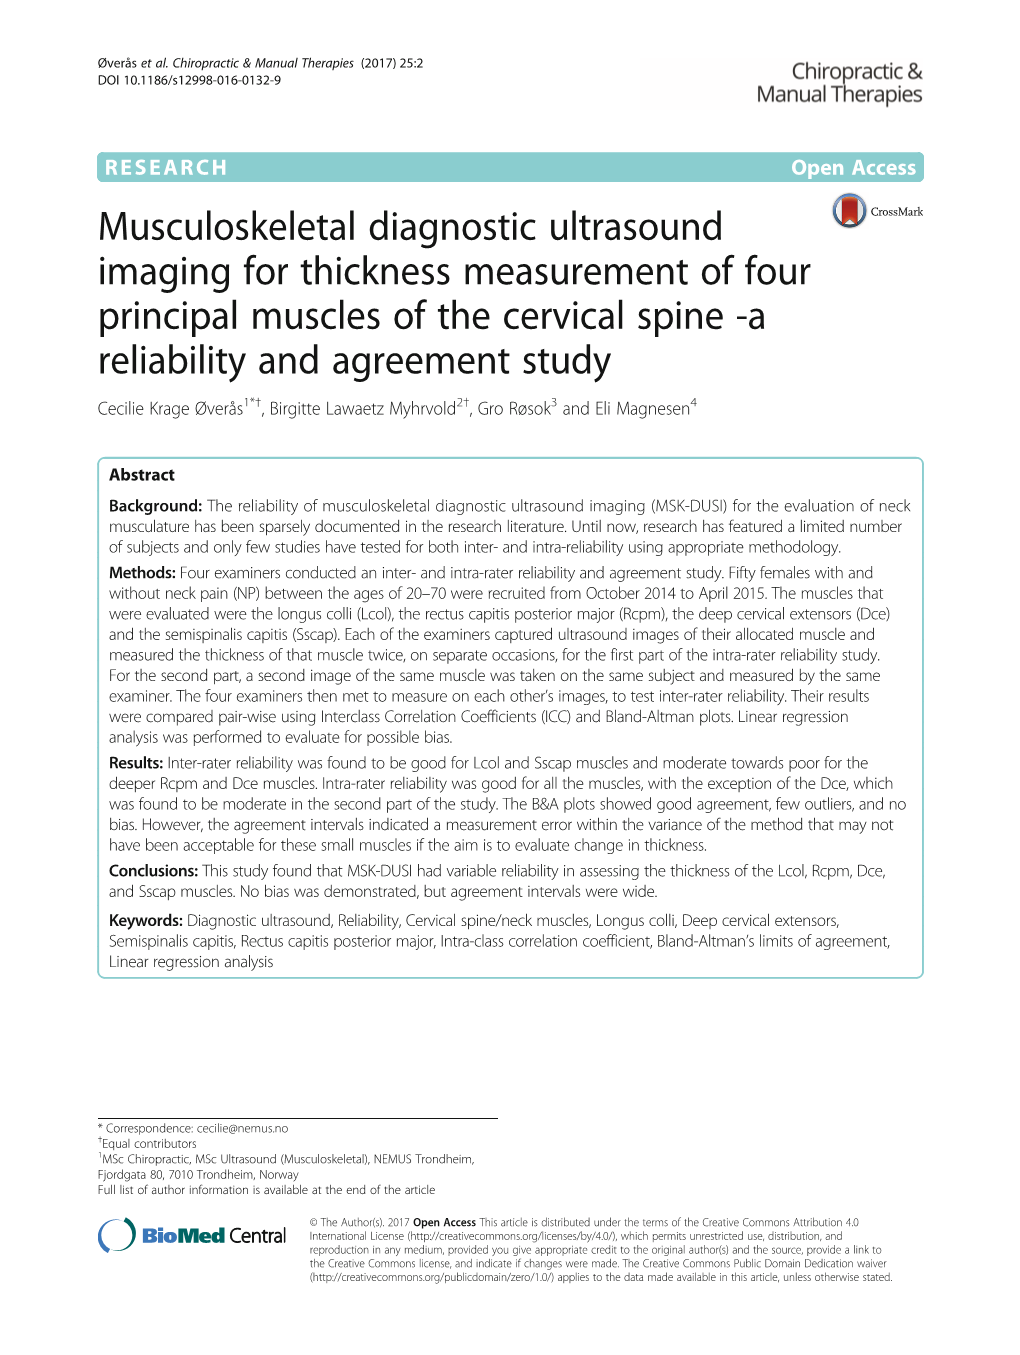 Musculoskeletal Diagnostic Ultrasound